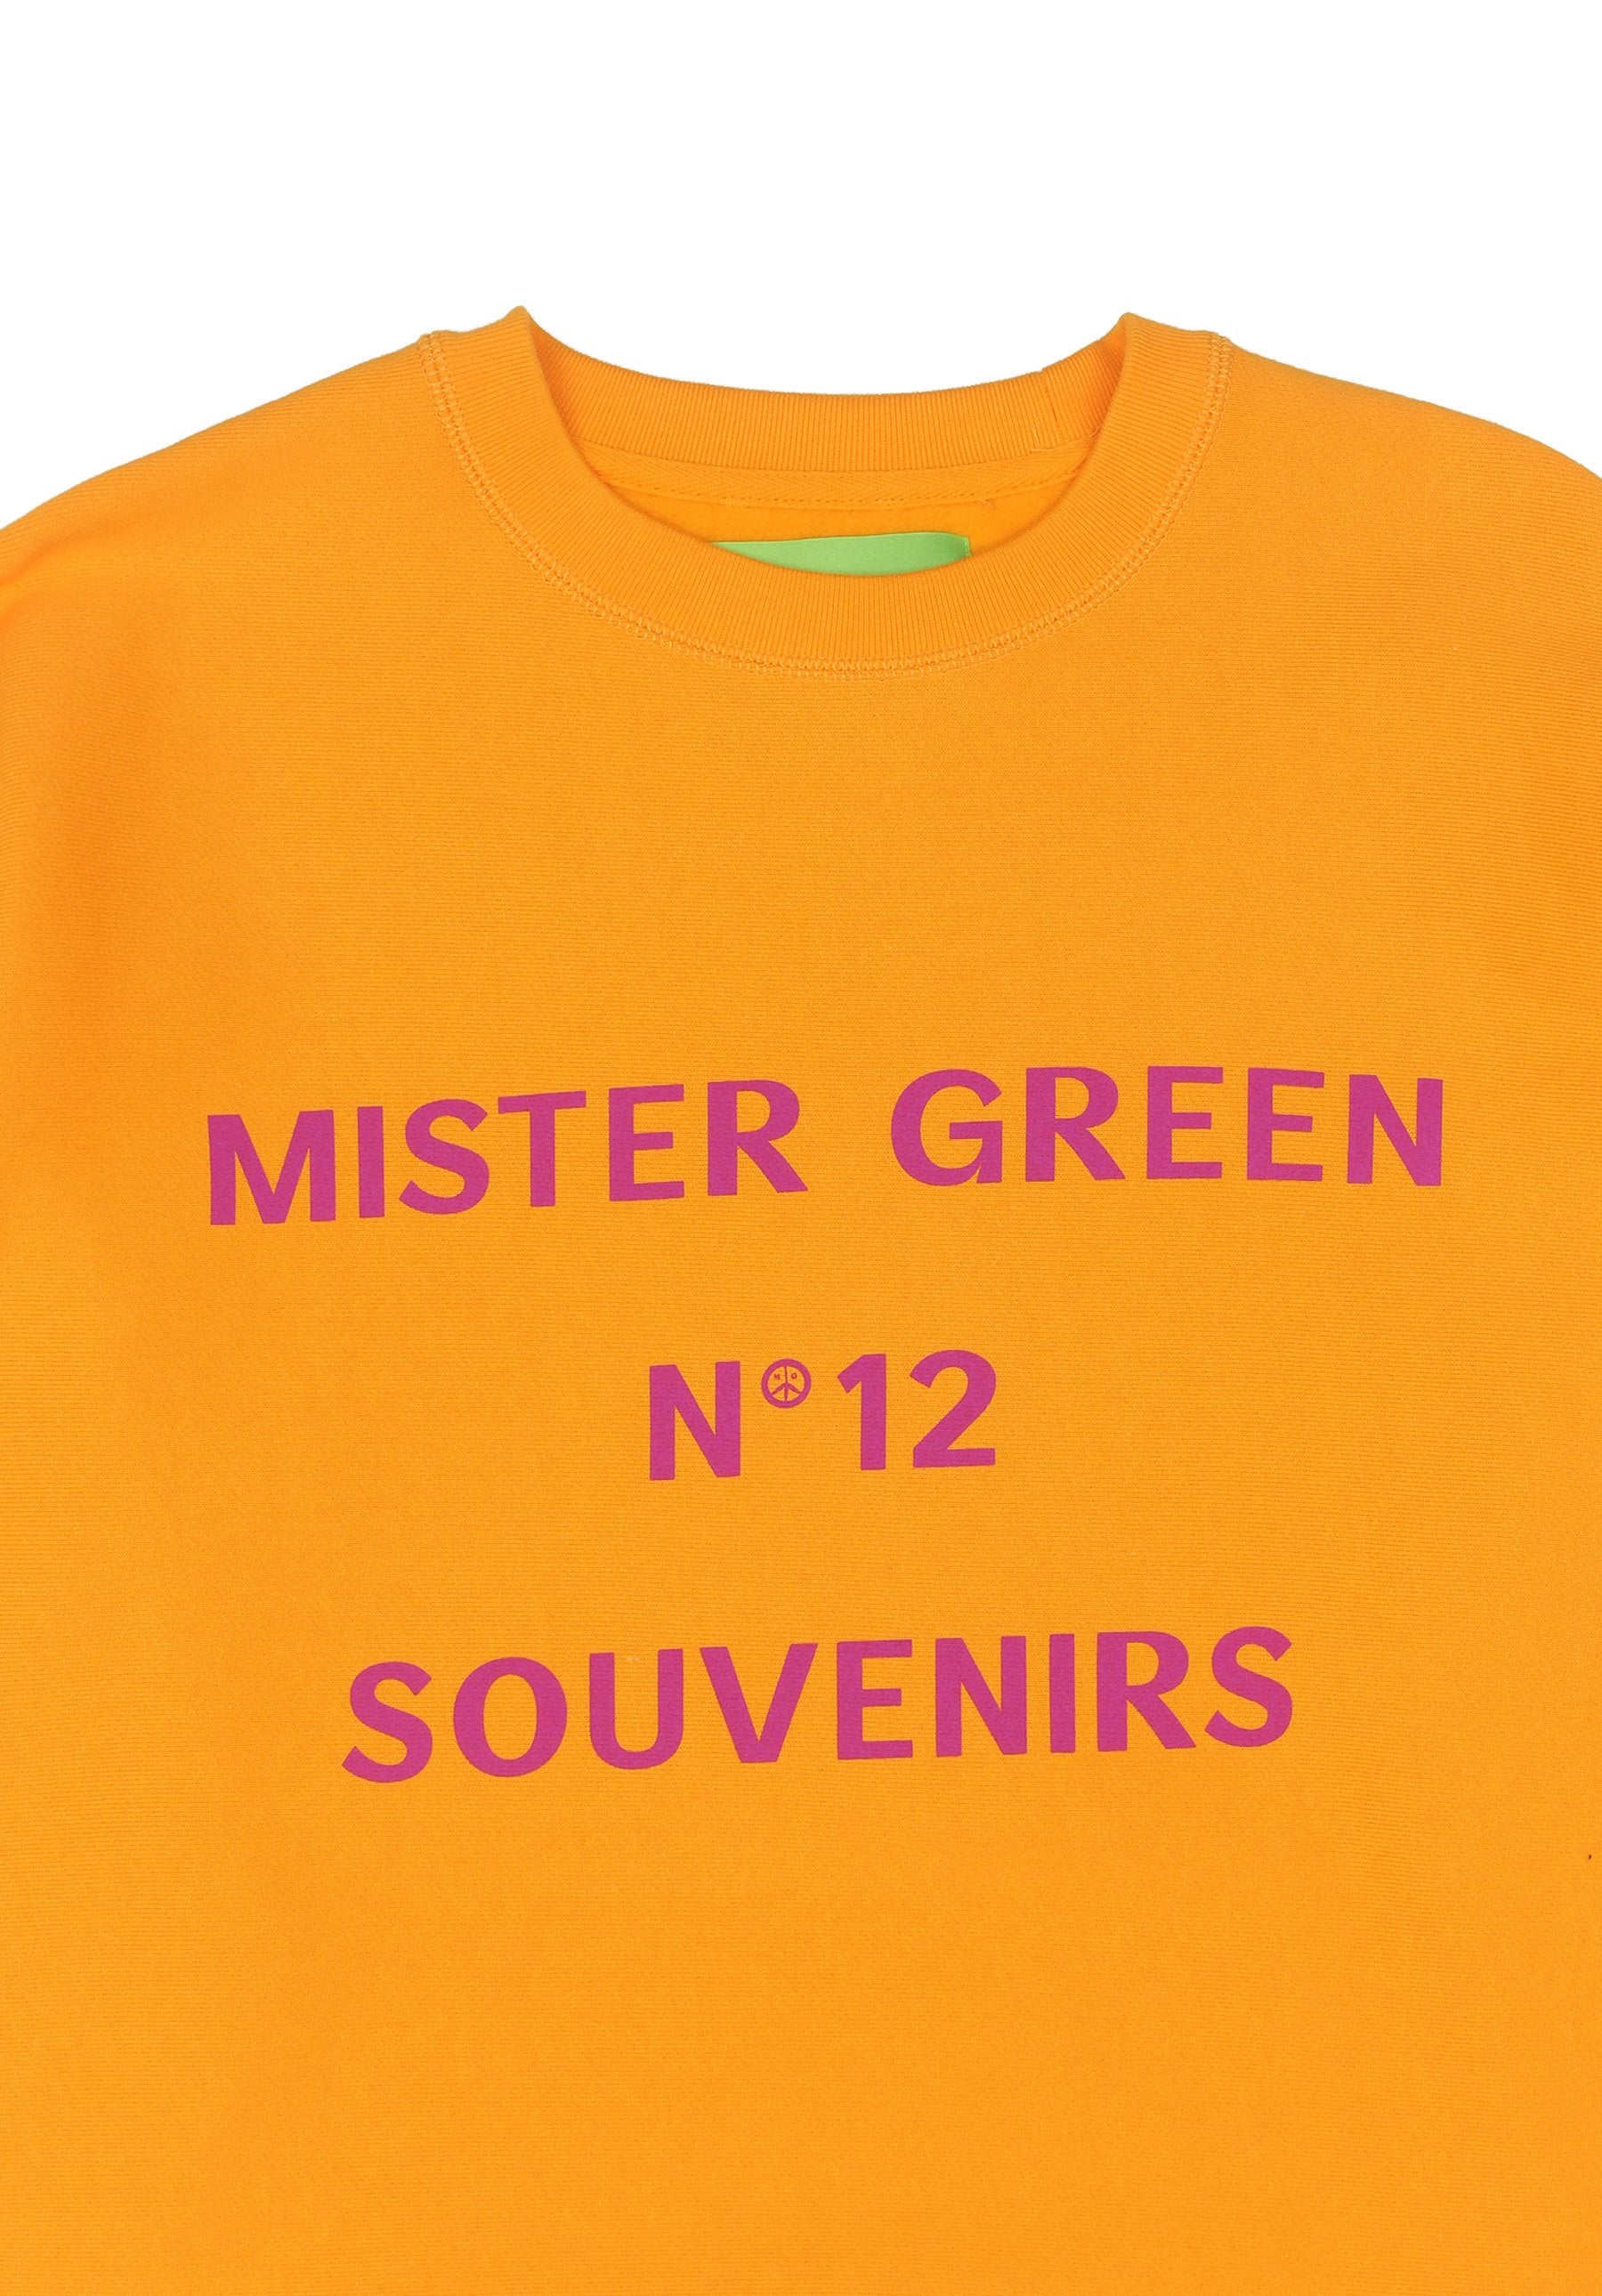 No. 12 Souvenirs Crewneck - Golden-Mister Green-Mister Green